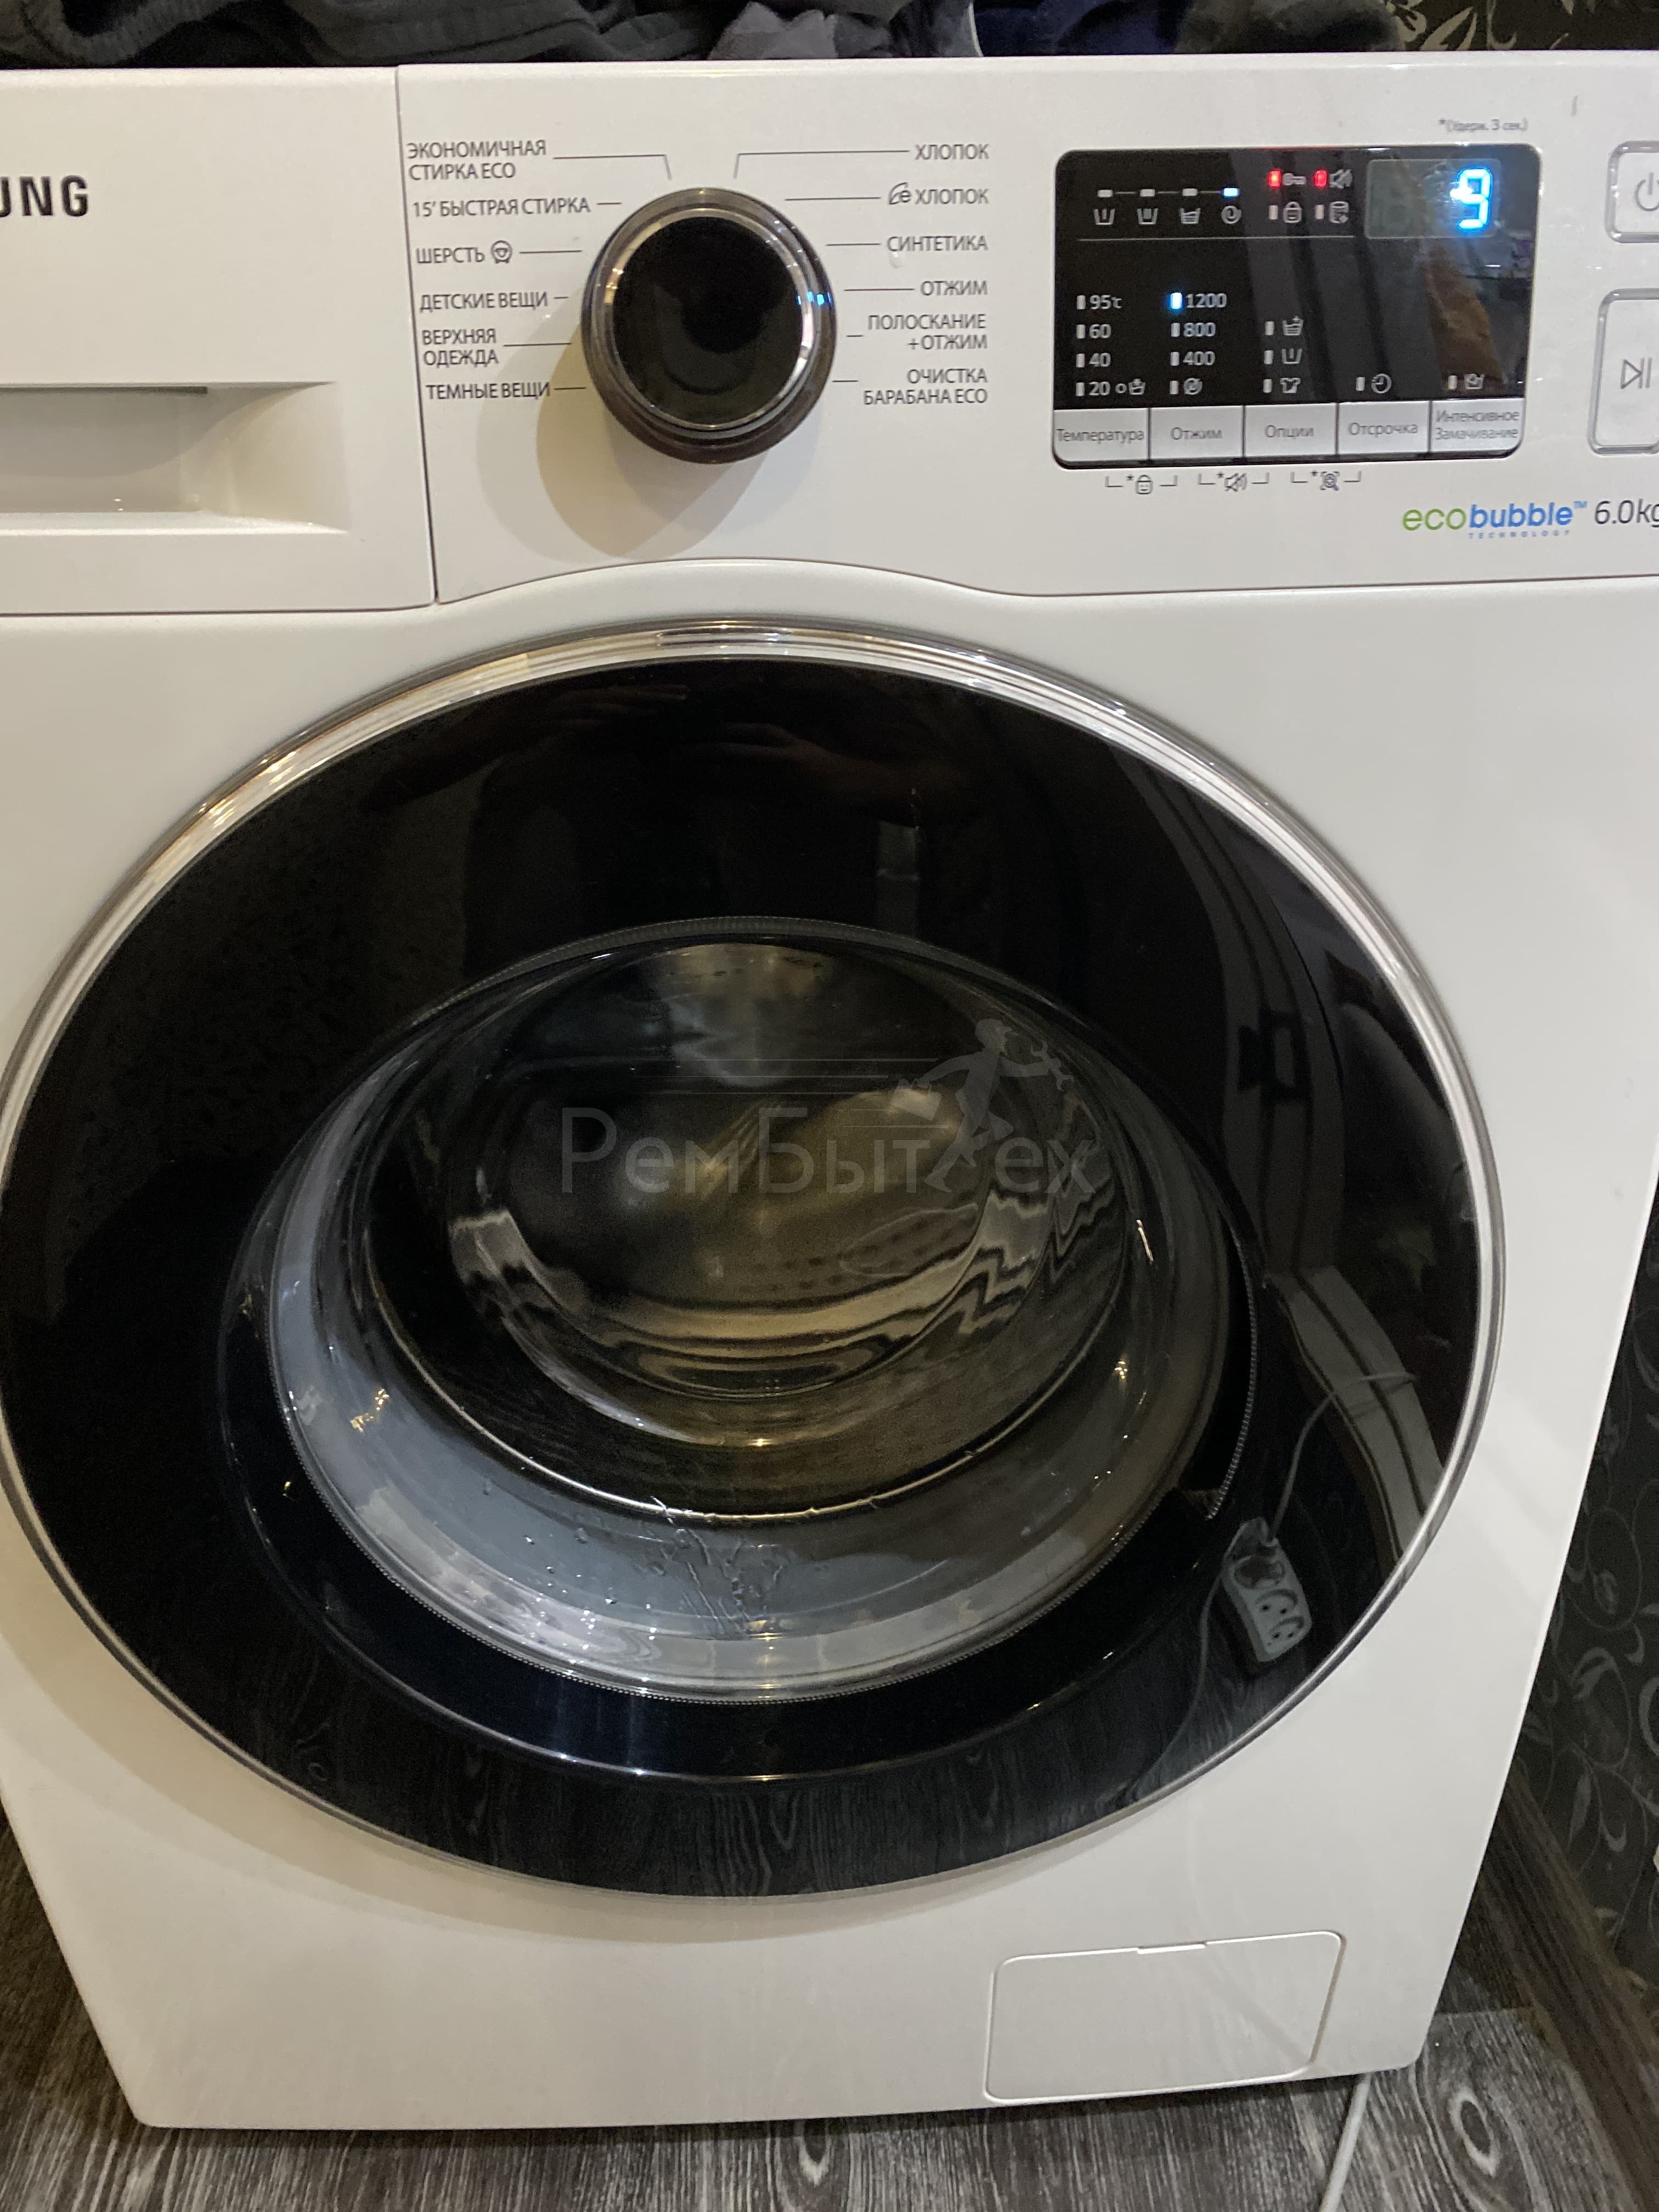 28 причин, почему не включается стиральная машина автомат | РемБытТех